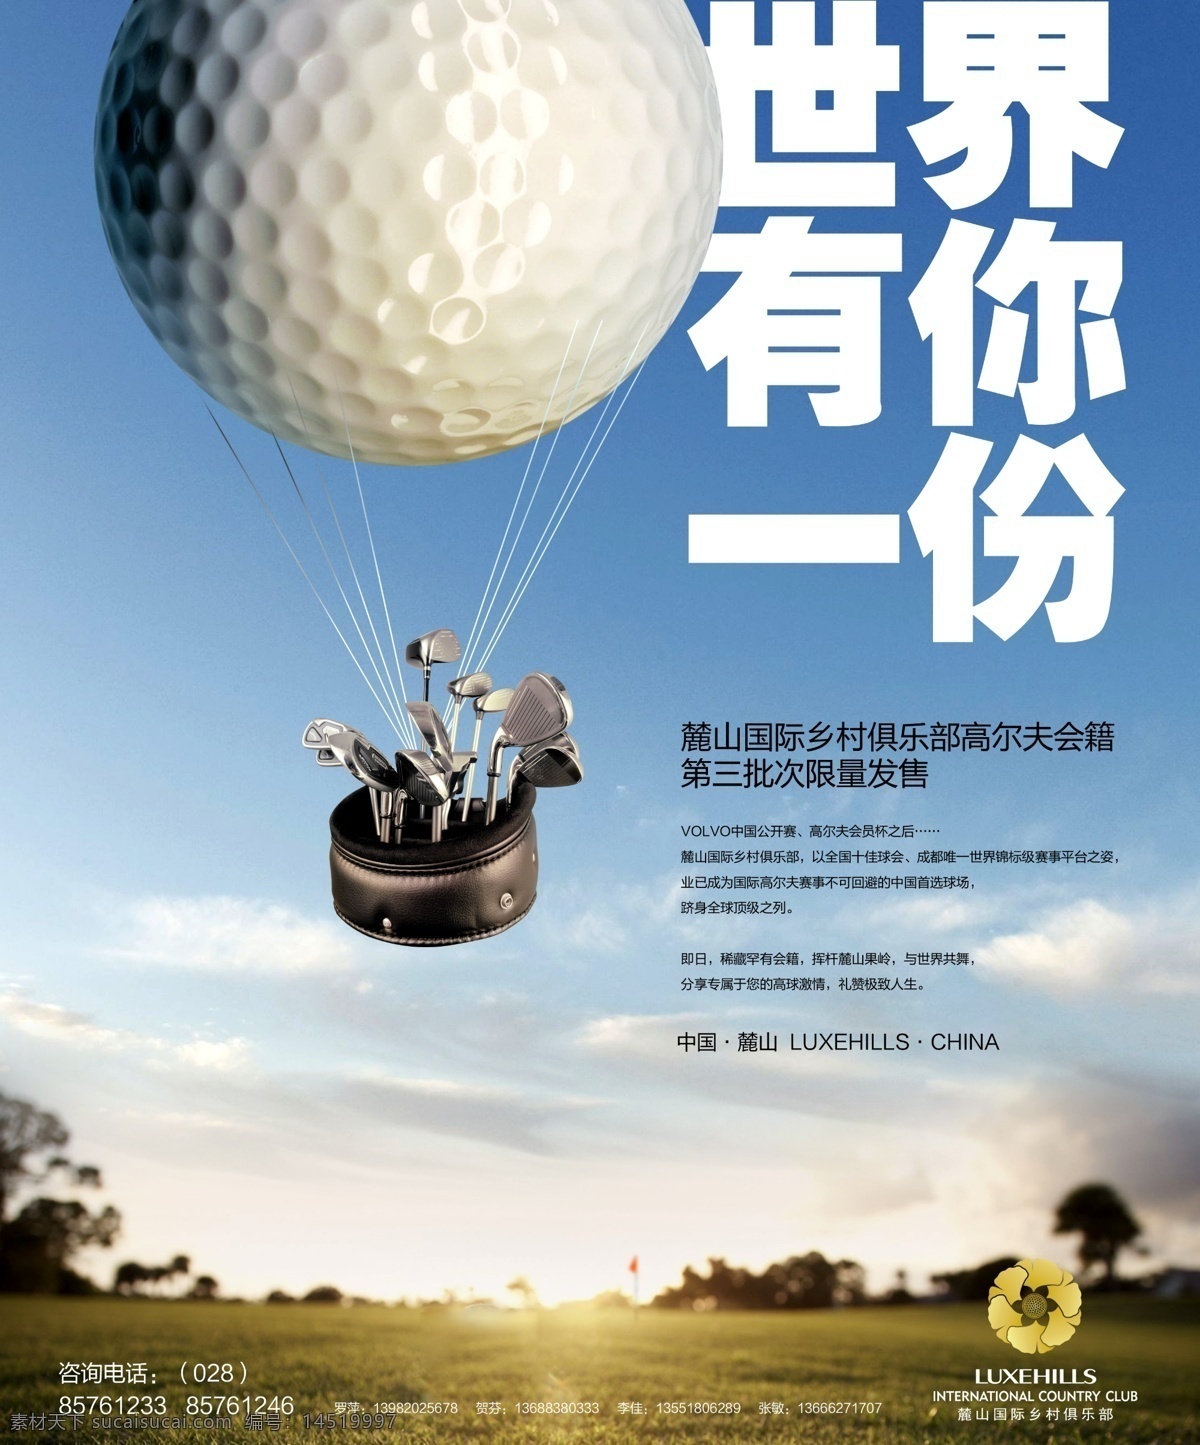 高尔夫 海报 创意 大气 高贵 高档 果岭 文化 golf 体育 皇室运动 皇家 球场 高尔夫运动 贵族 高端 专业 分层 广告设计模板 源文件